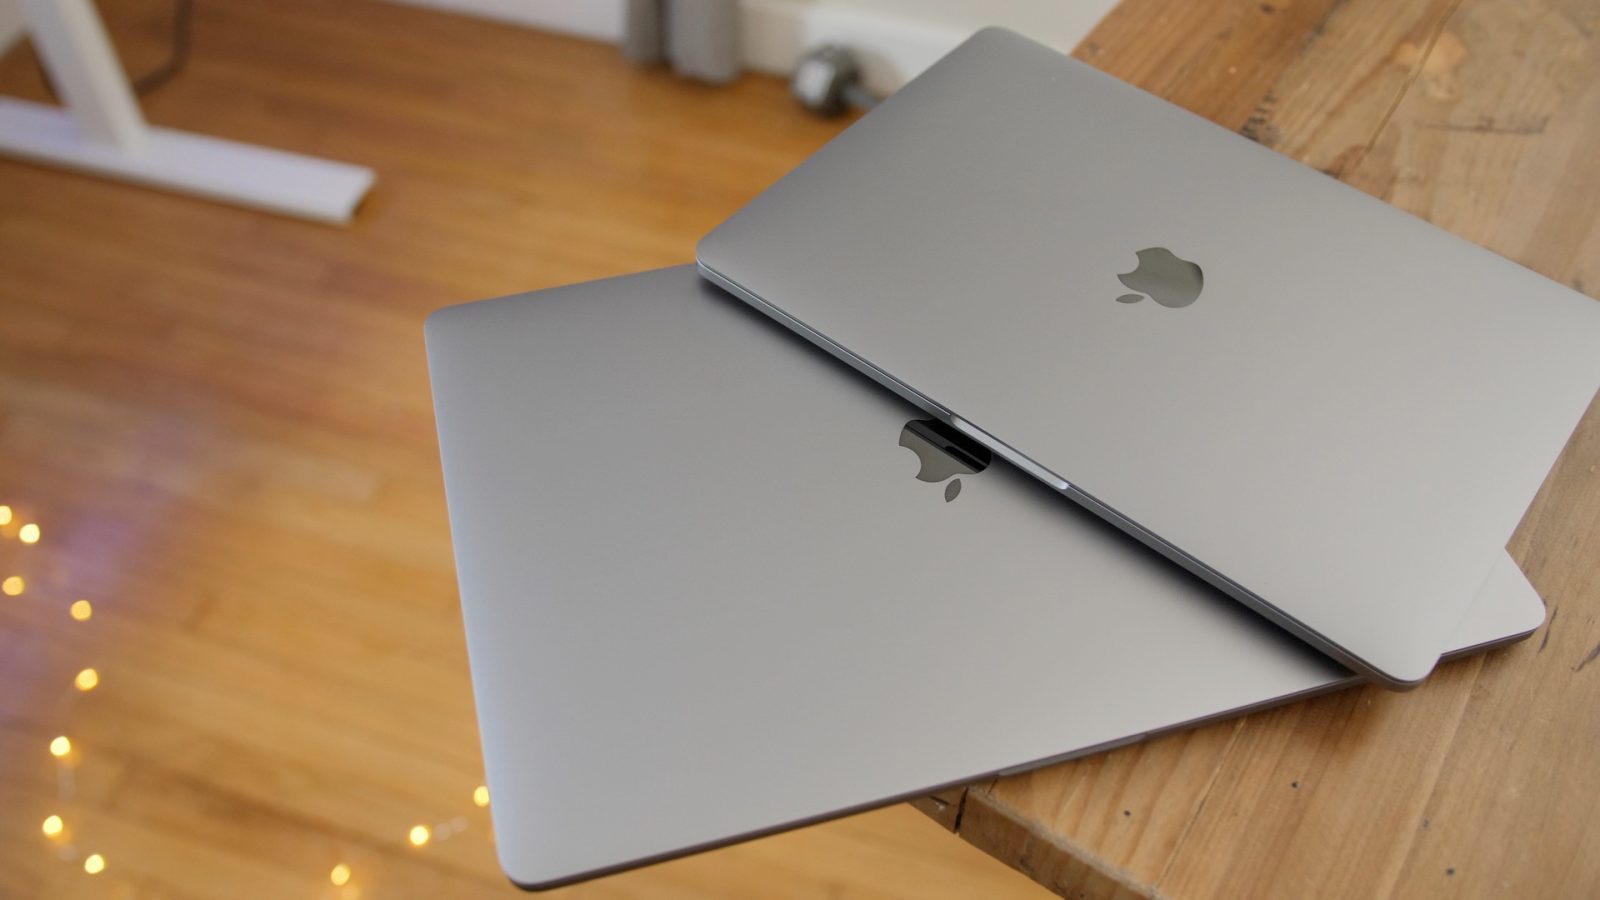 MacBook Pro thế hệ tiếp theo sẽ cải thiện màn hình, sạc qua MagSafe nhanh hơn